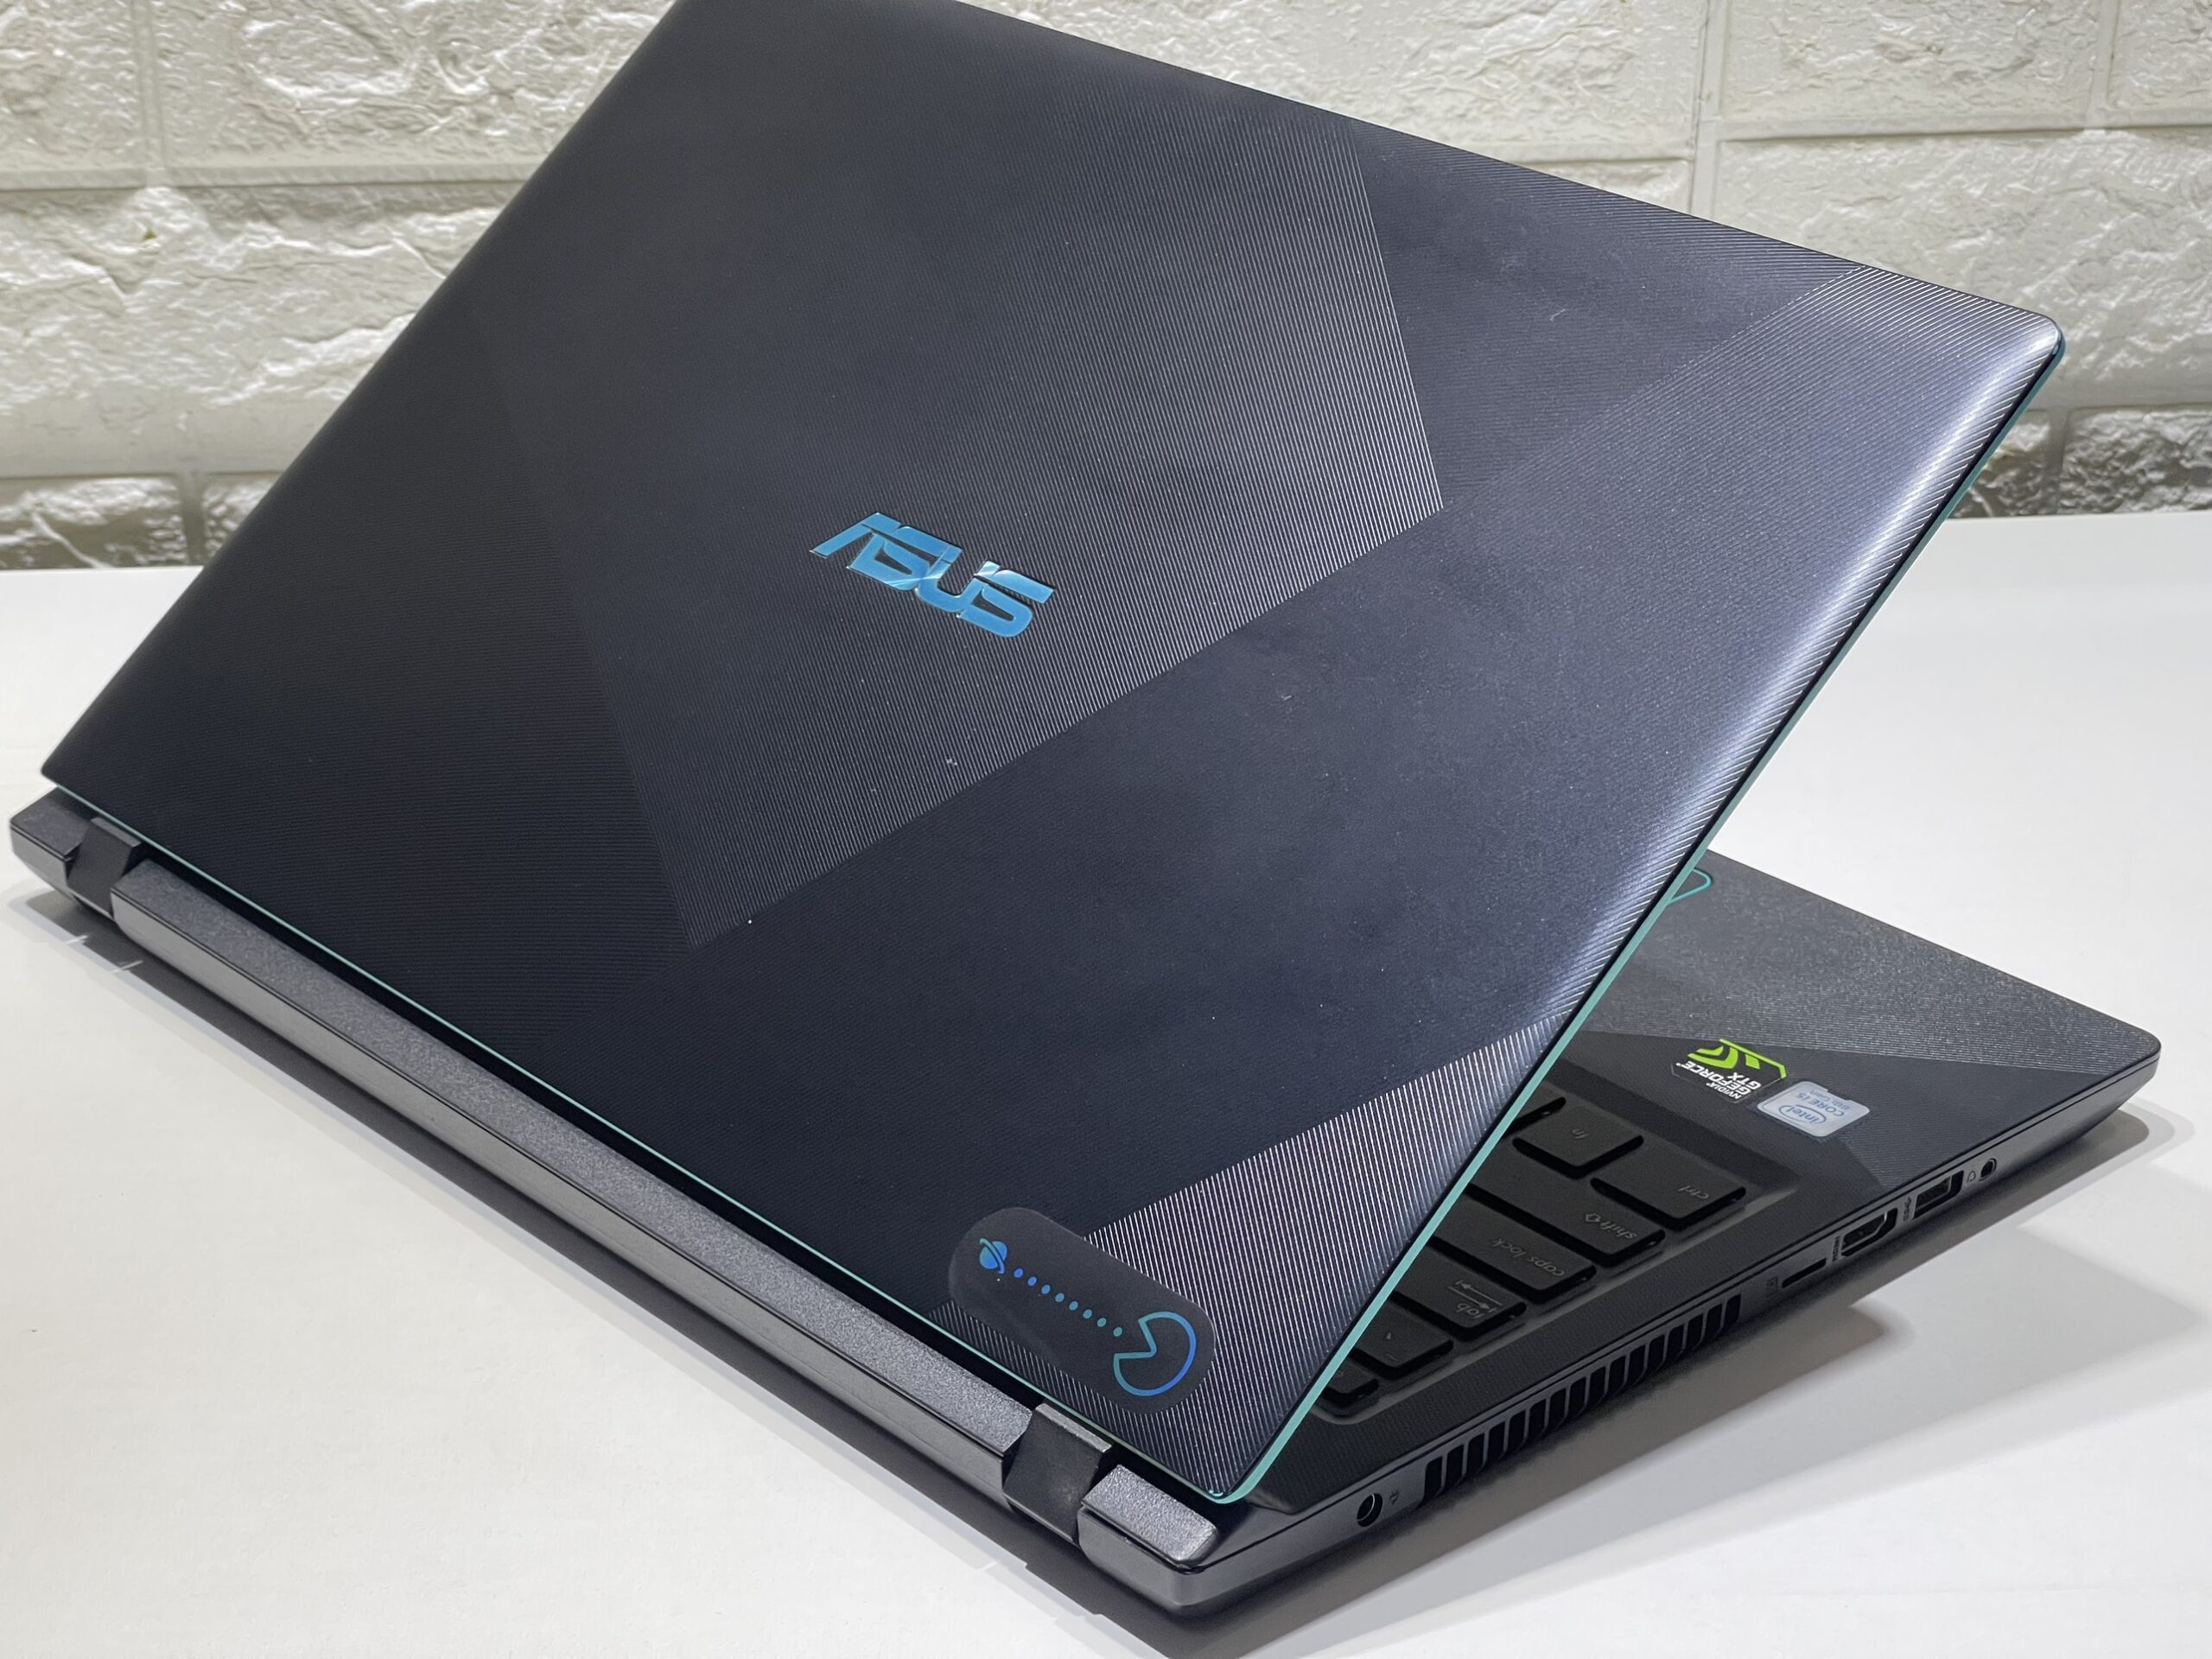 Laptop Asus Gaming F560DU/ i5 8250 8CPUS/ 8G/ SSD128 + 1000G/ GTX1050 4G/ Viền Mỏng/ Chuyên Game Đồ Họa/ Giá rẻ i5 8250/GTX 1050/16GB /128GB /15.6" FHD